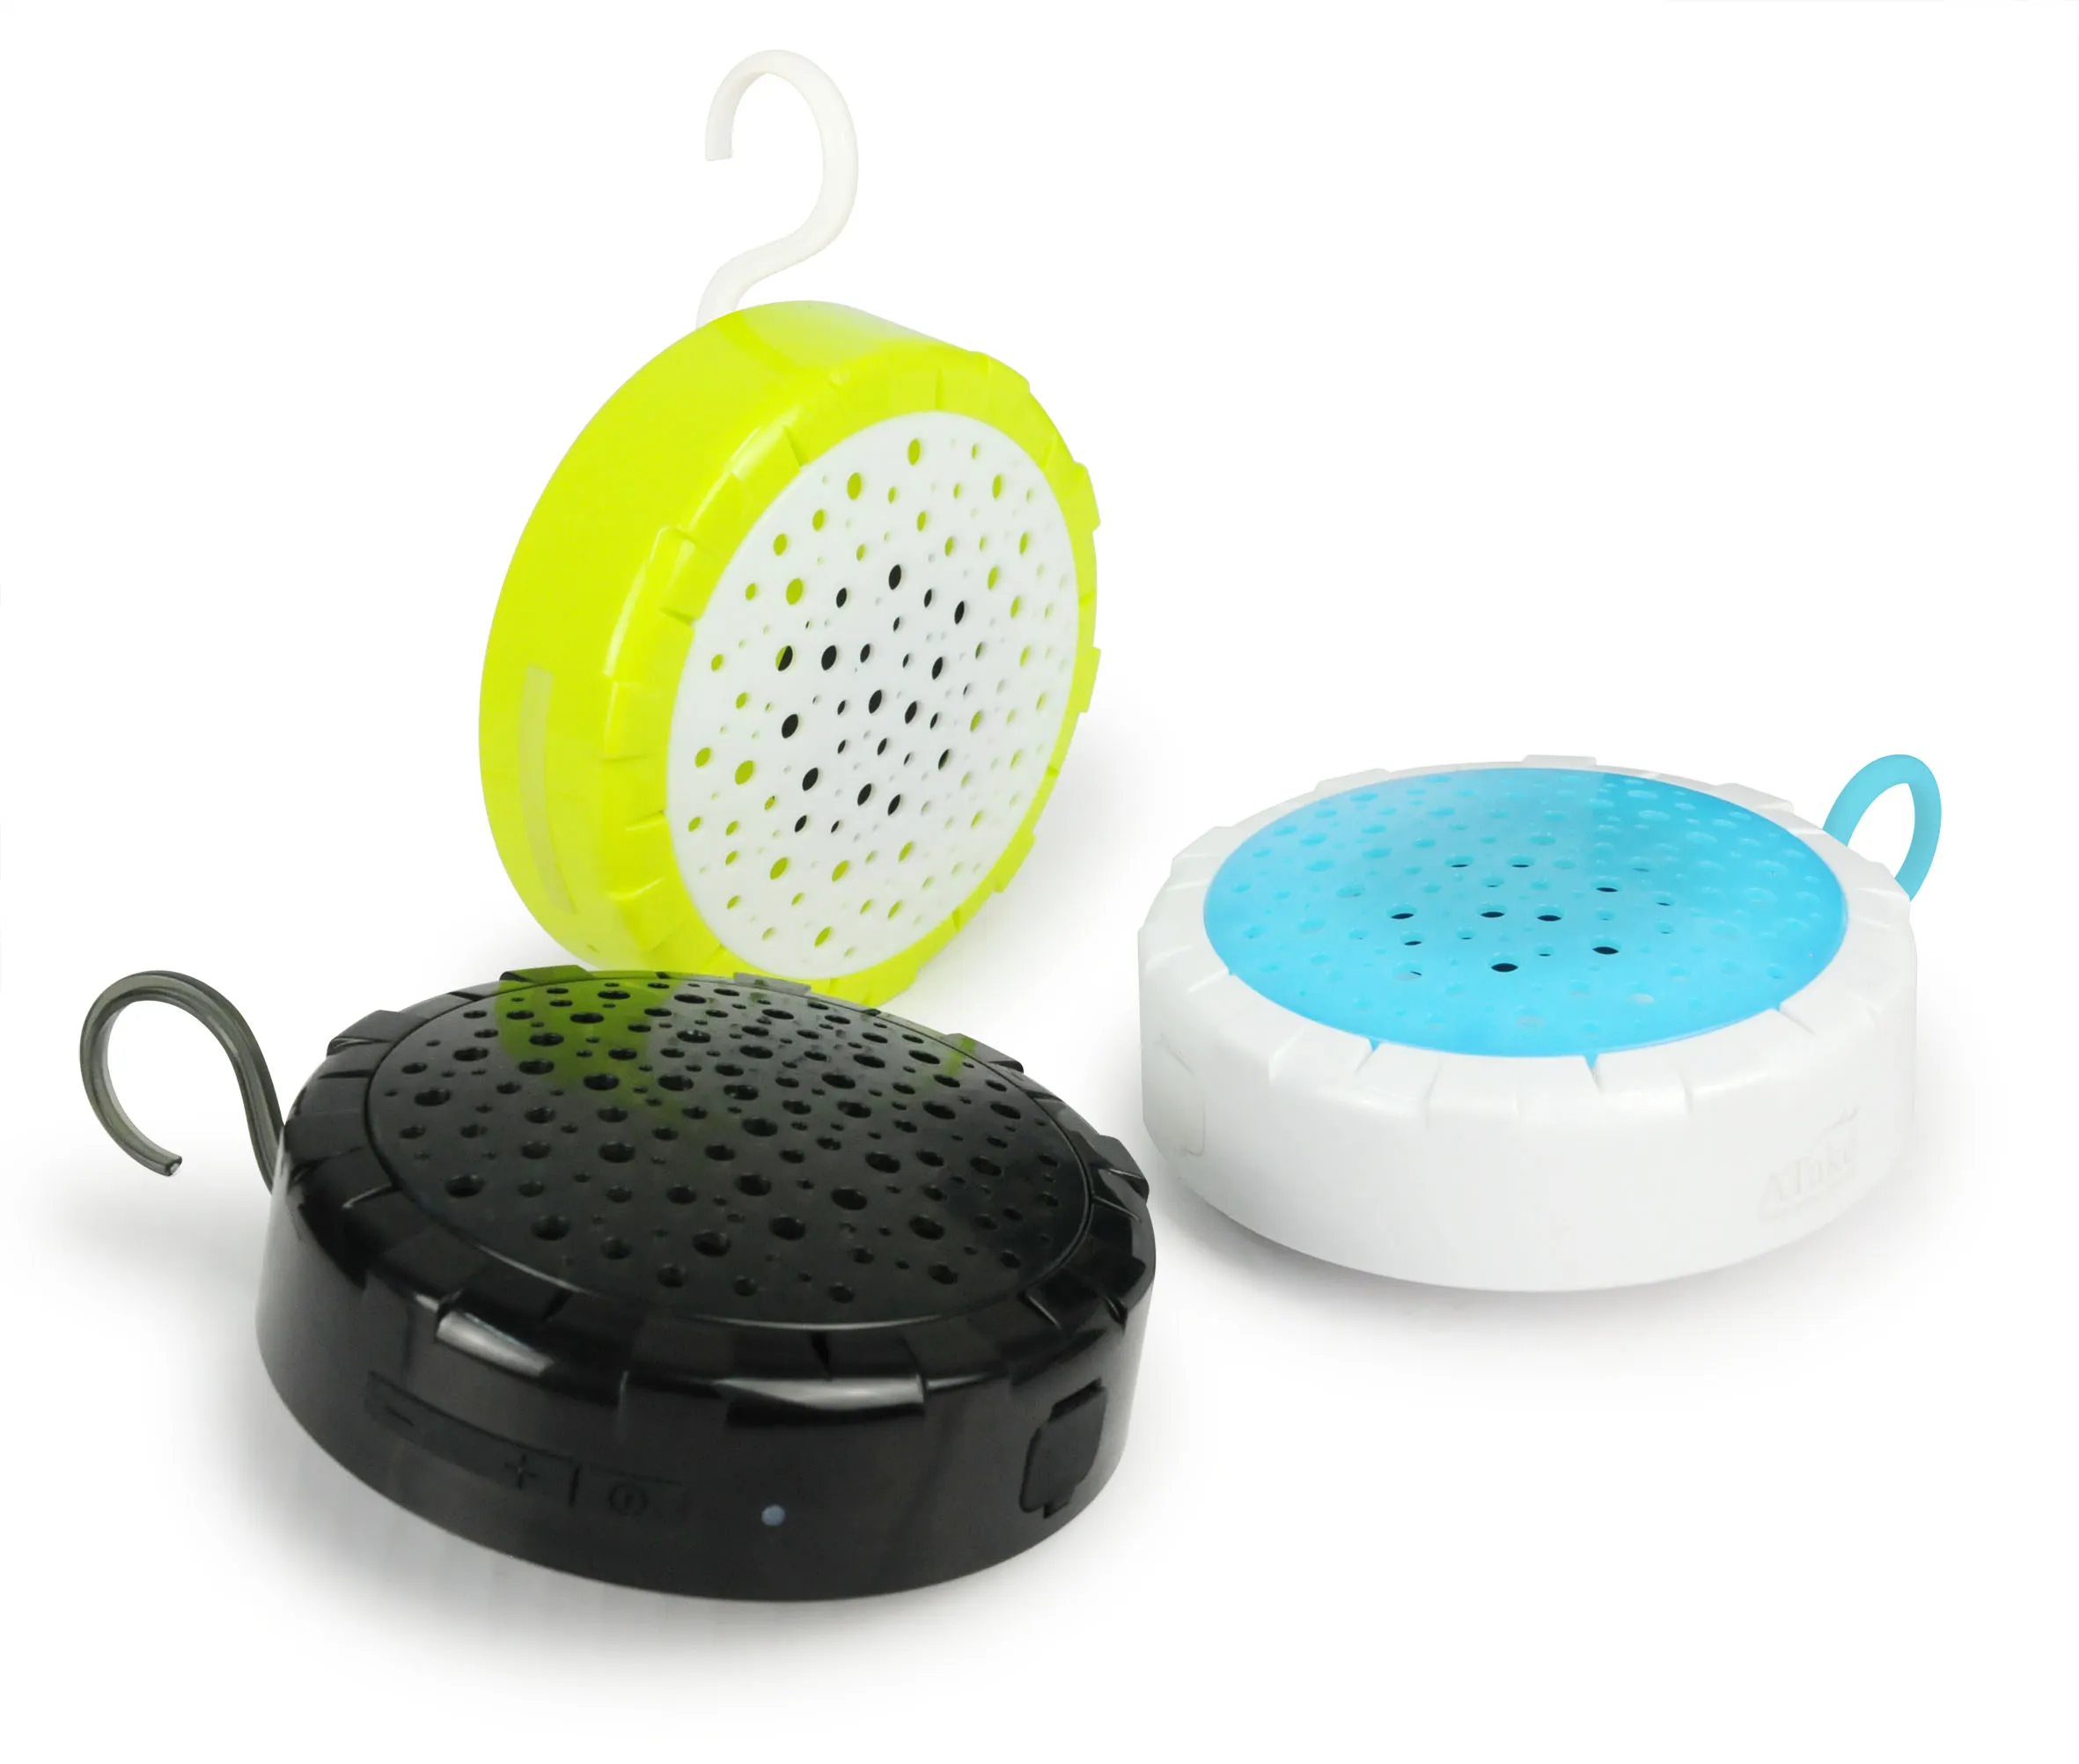 Atake Haut-parleur Bluetooth de douche sans fil étanche IPX6 avec capuchon de suspension à crochet, caisson de basses sans fil Bluetooth pour douche anti-éclaboussures